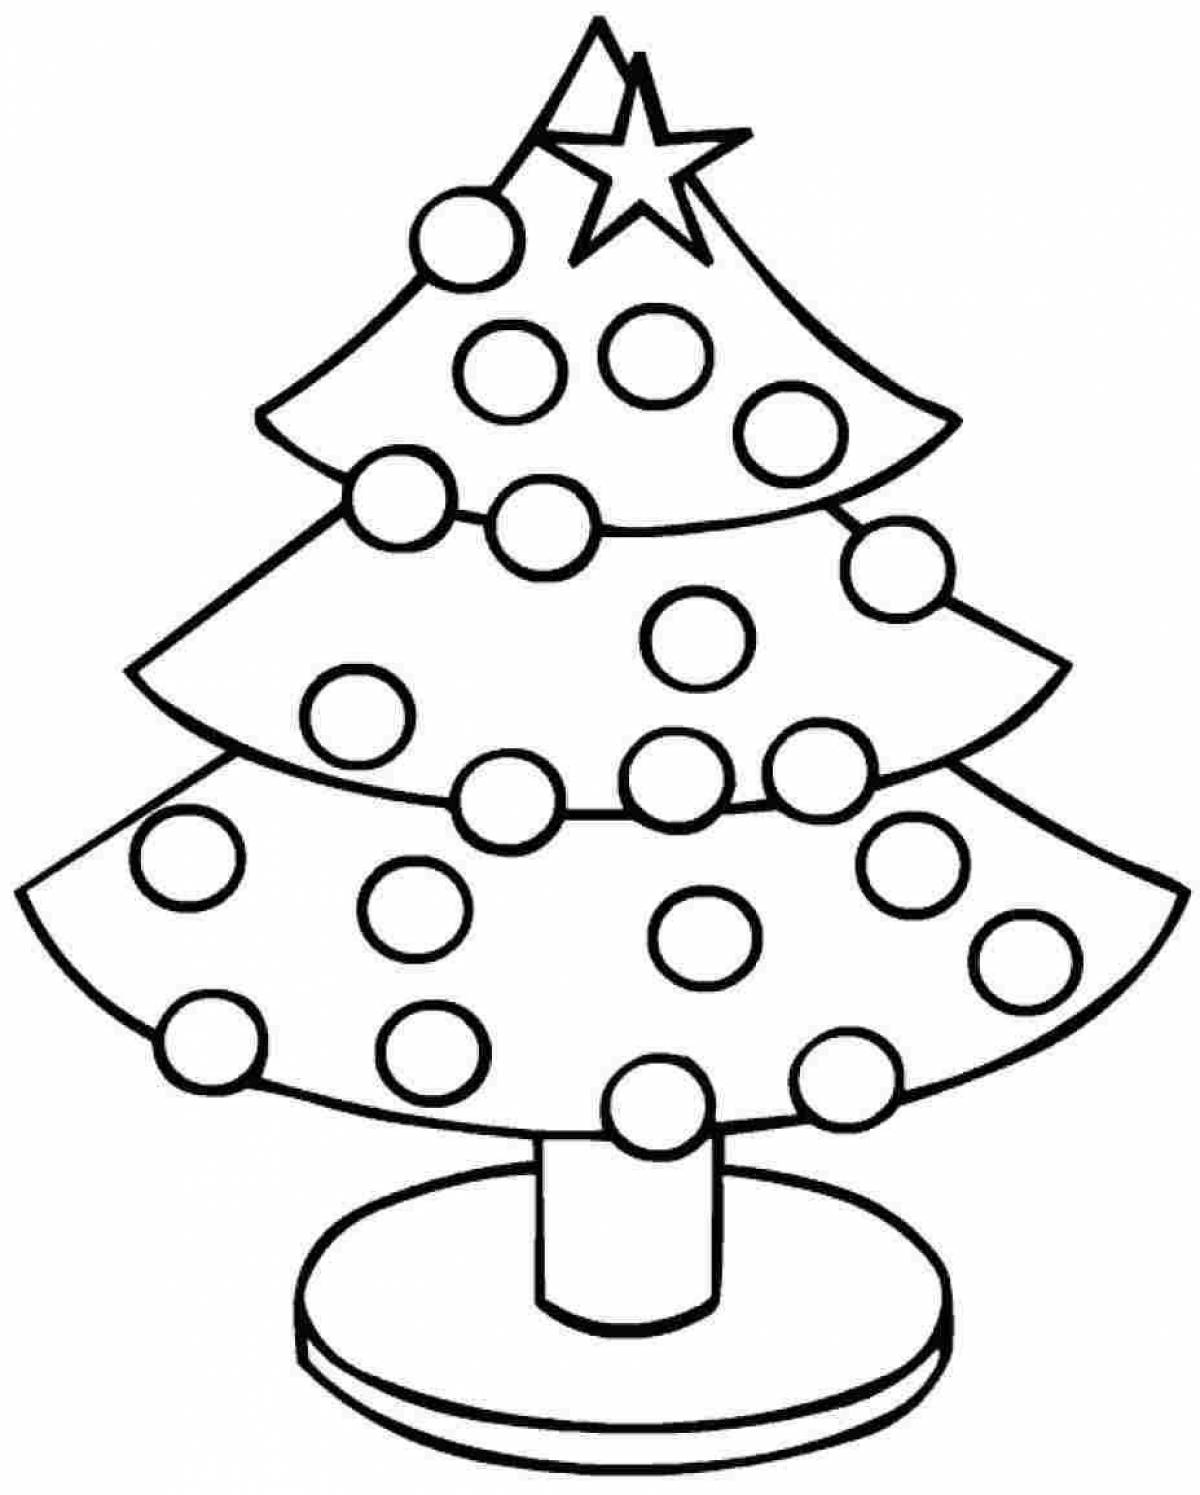 Раскраска милая новогодняя елка для дошкольников 2-3 лет